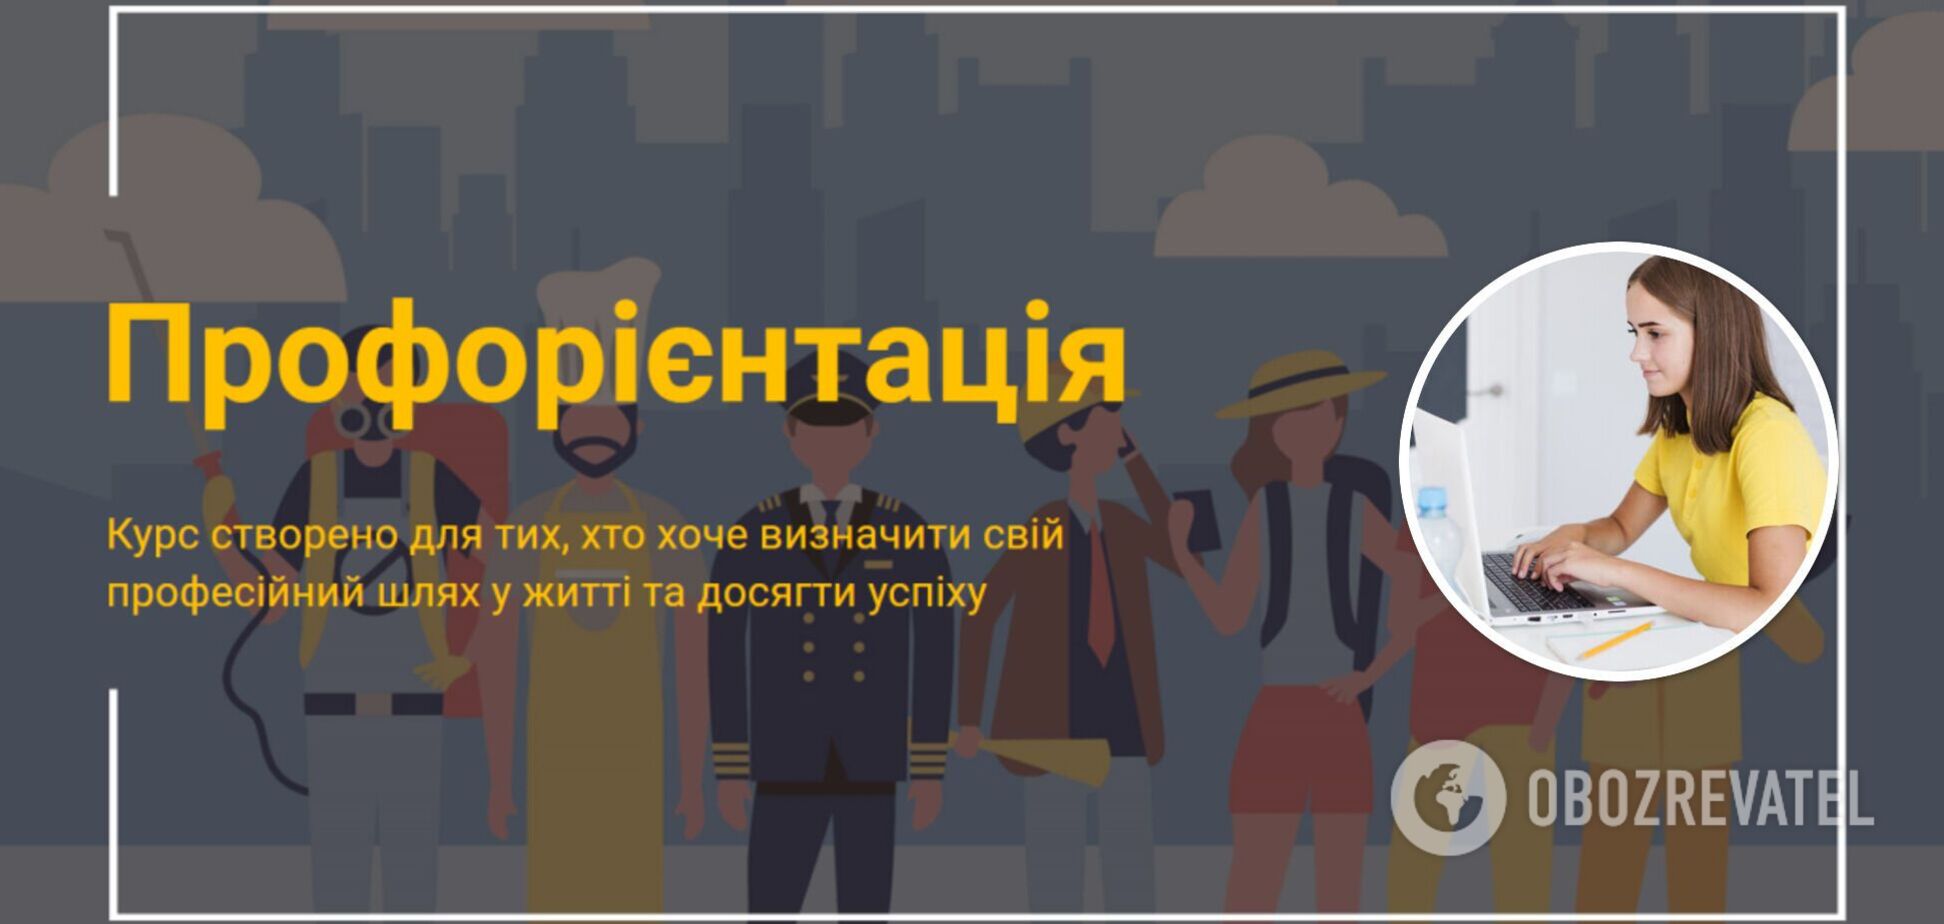 Украинские работодатели и педагоги создали бесплатные курсы по профориентации для молодежи